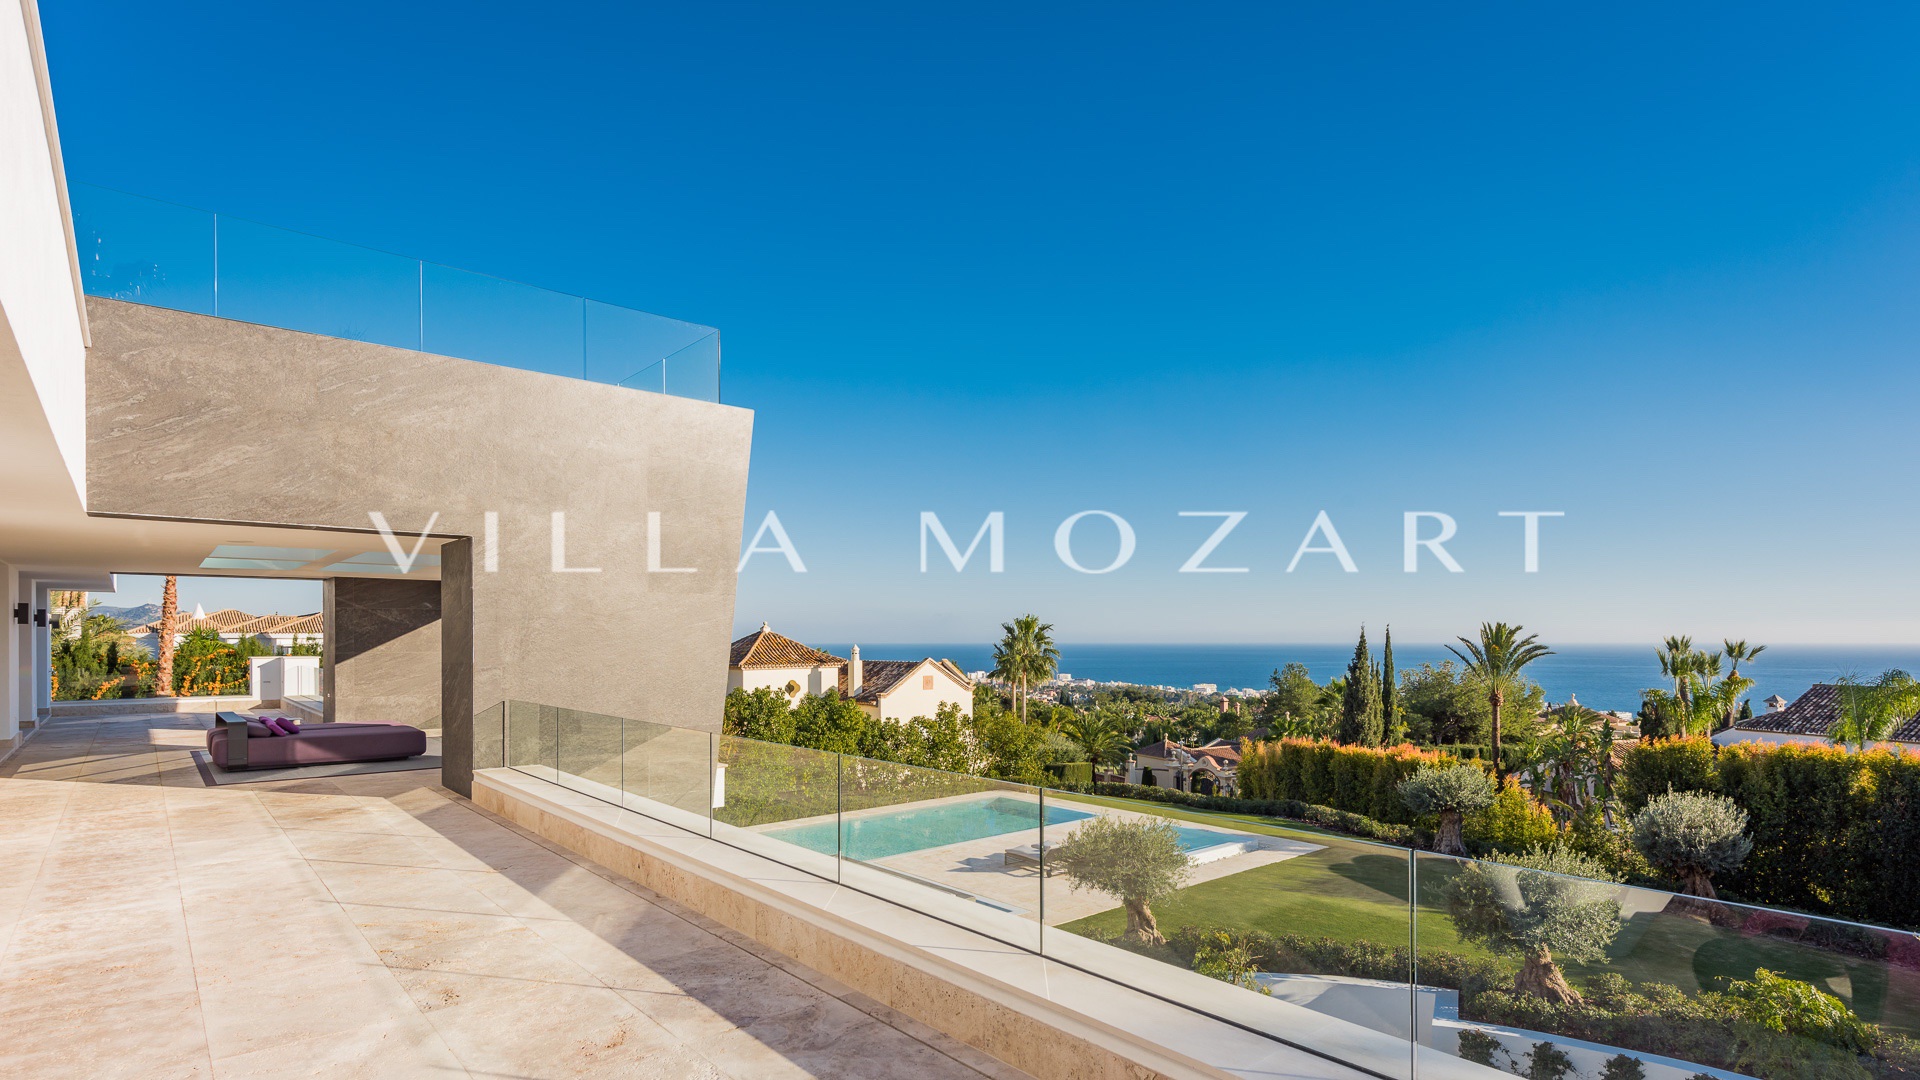 Villa Mozart Sierra Blanca Marbella